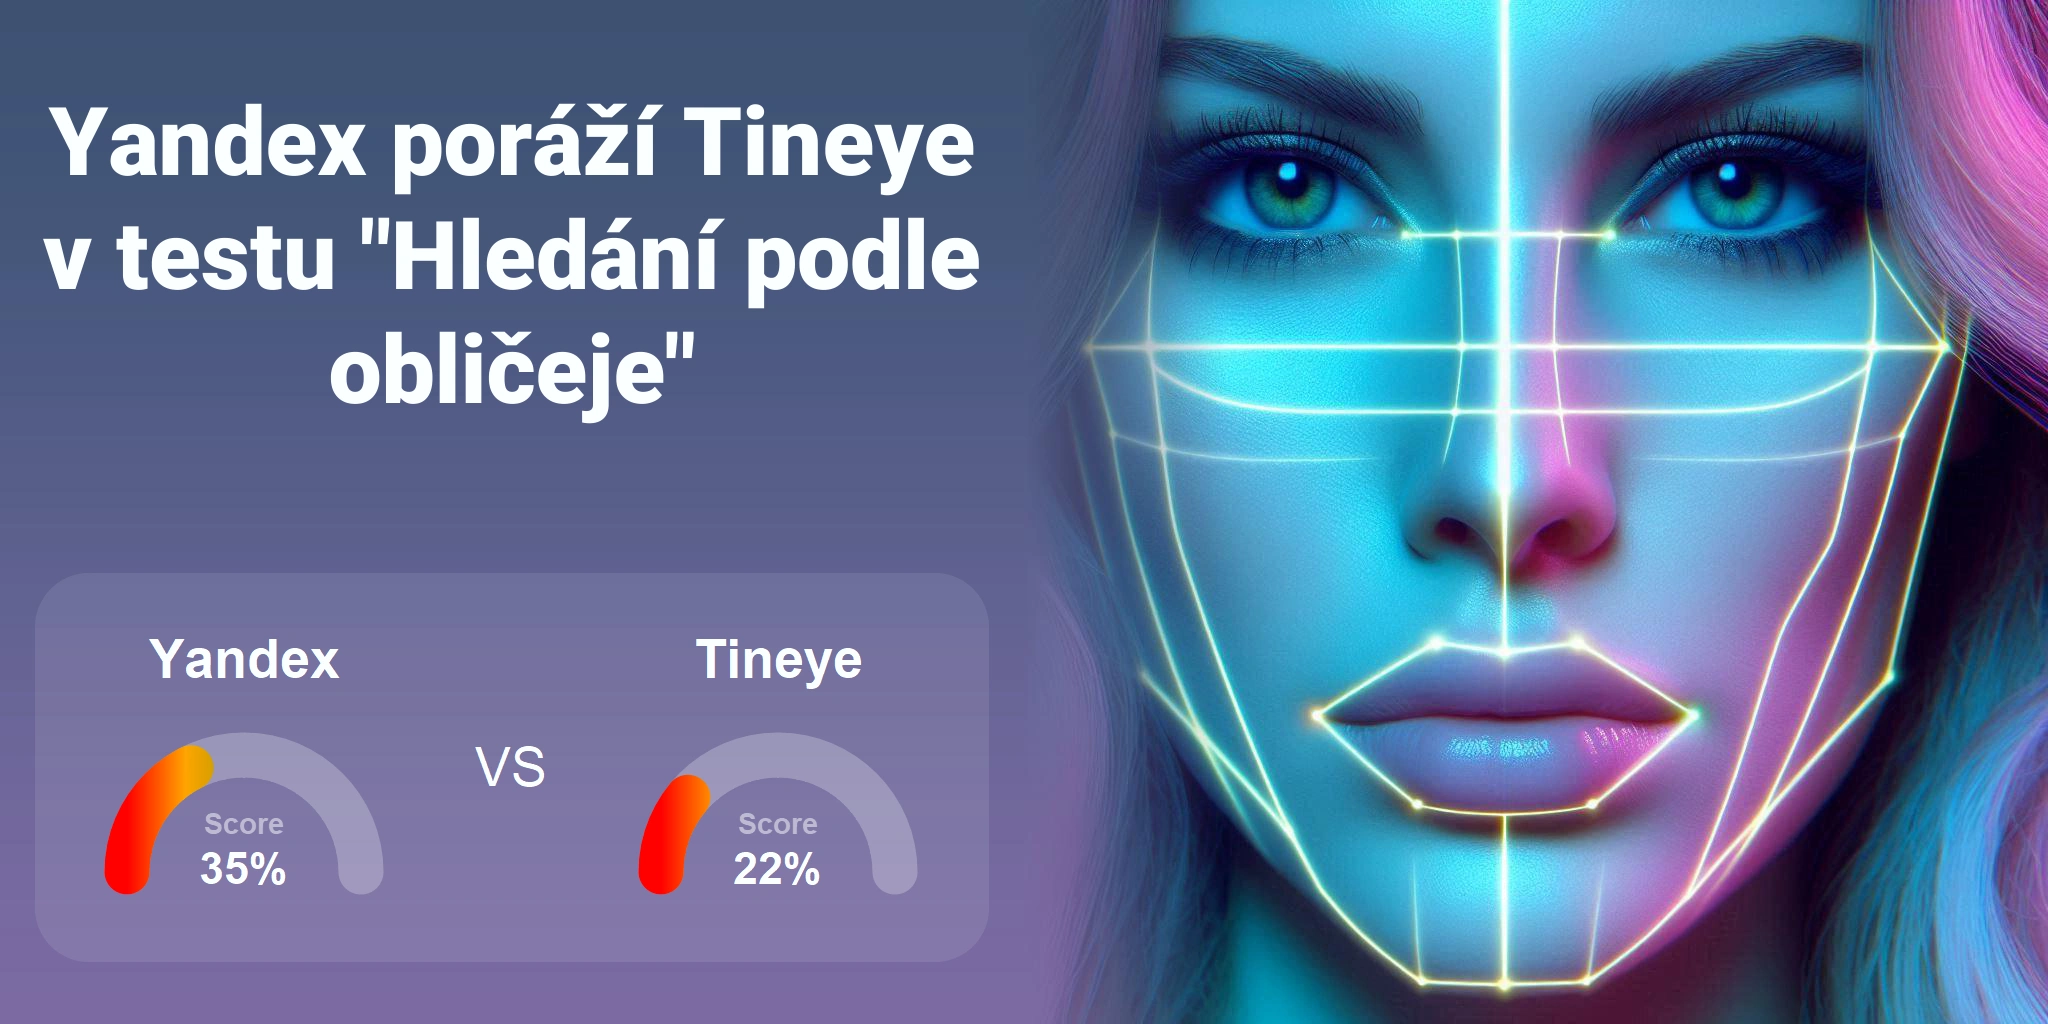 Který je lepší pro vyhledávání obličejů: <br>Tineye nebo Yandex?